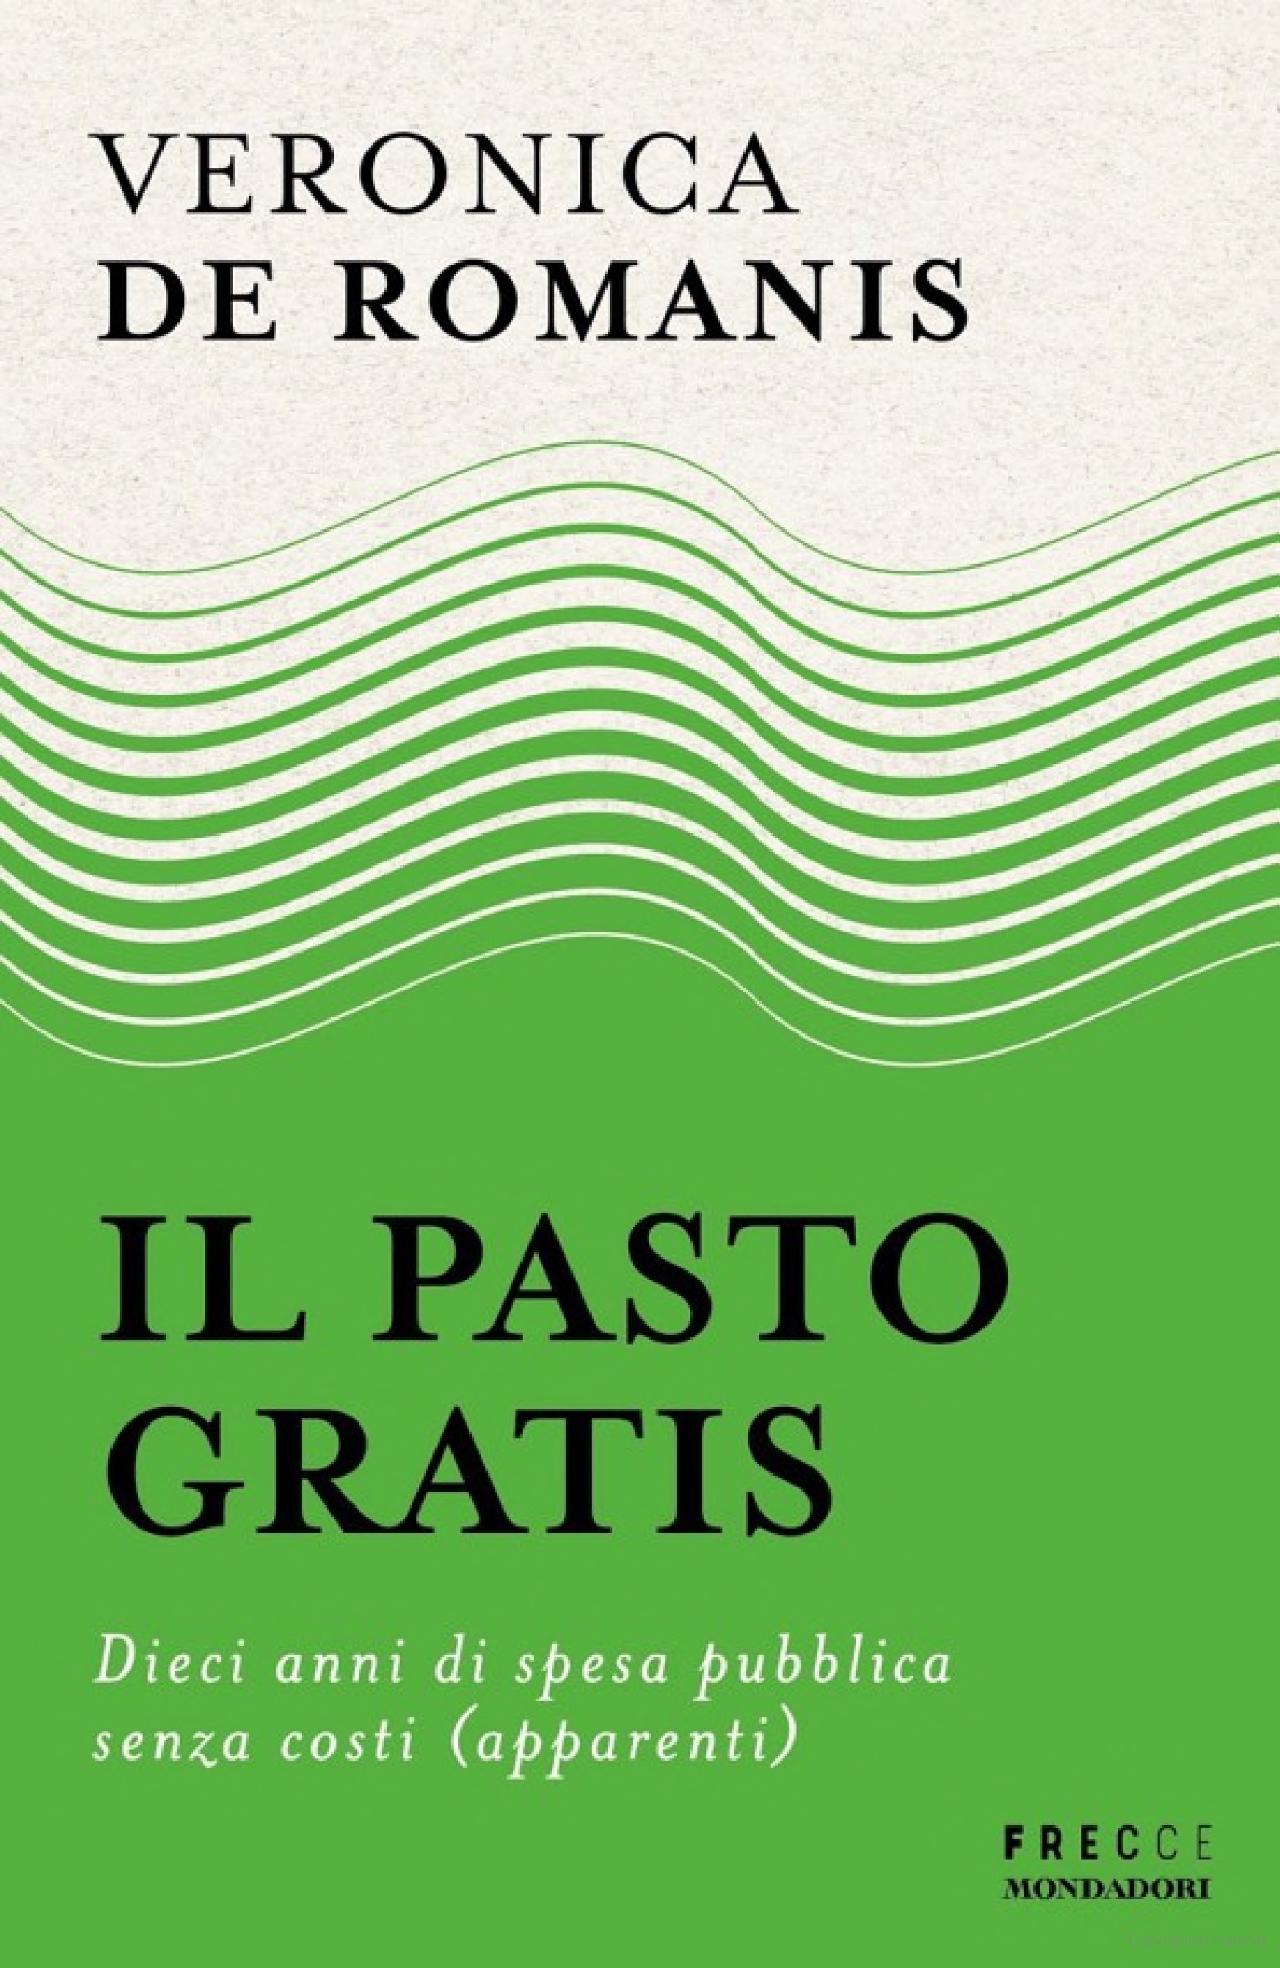 Copertina del libro "Il Pasto Gratis" di Veronica De Romanis